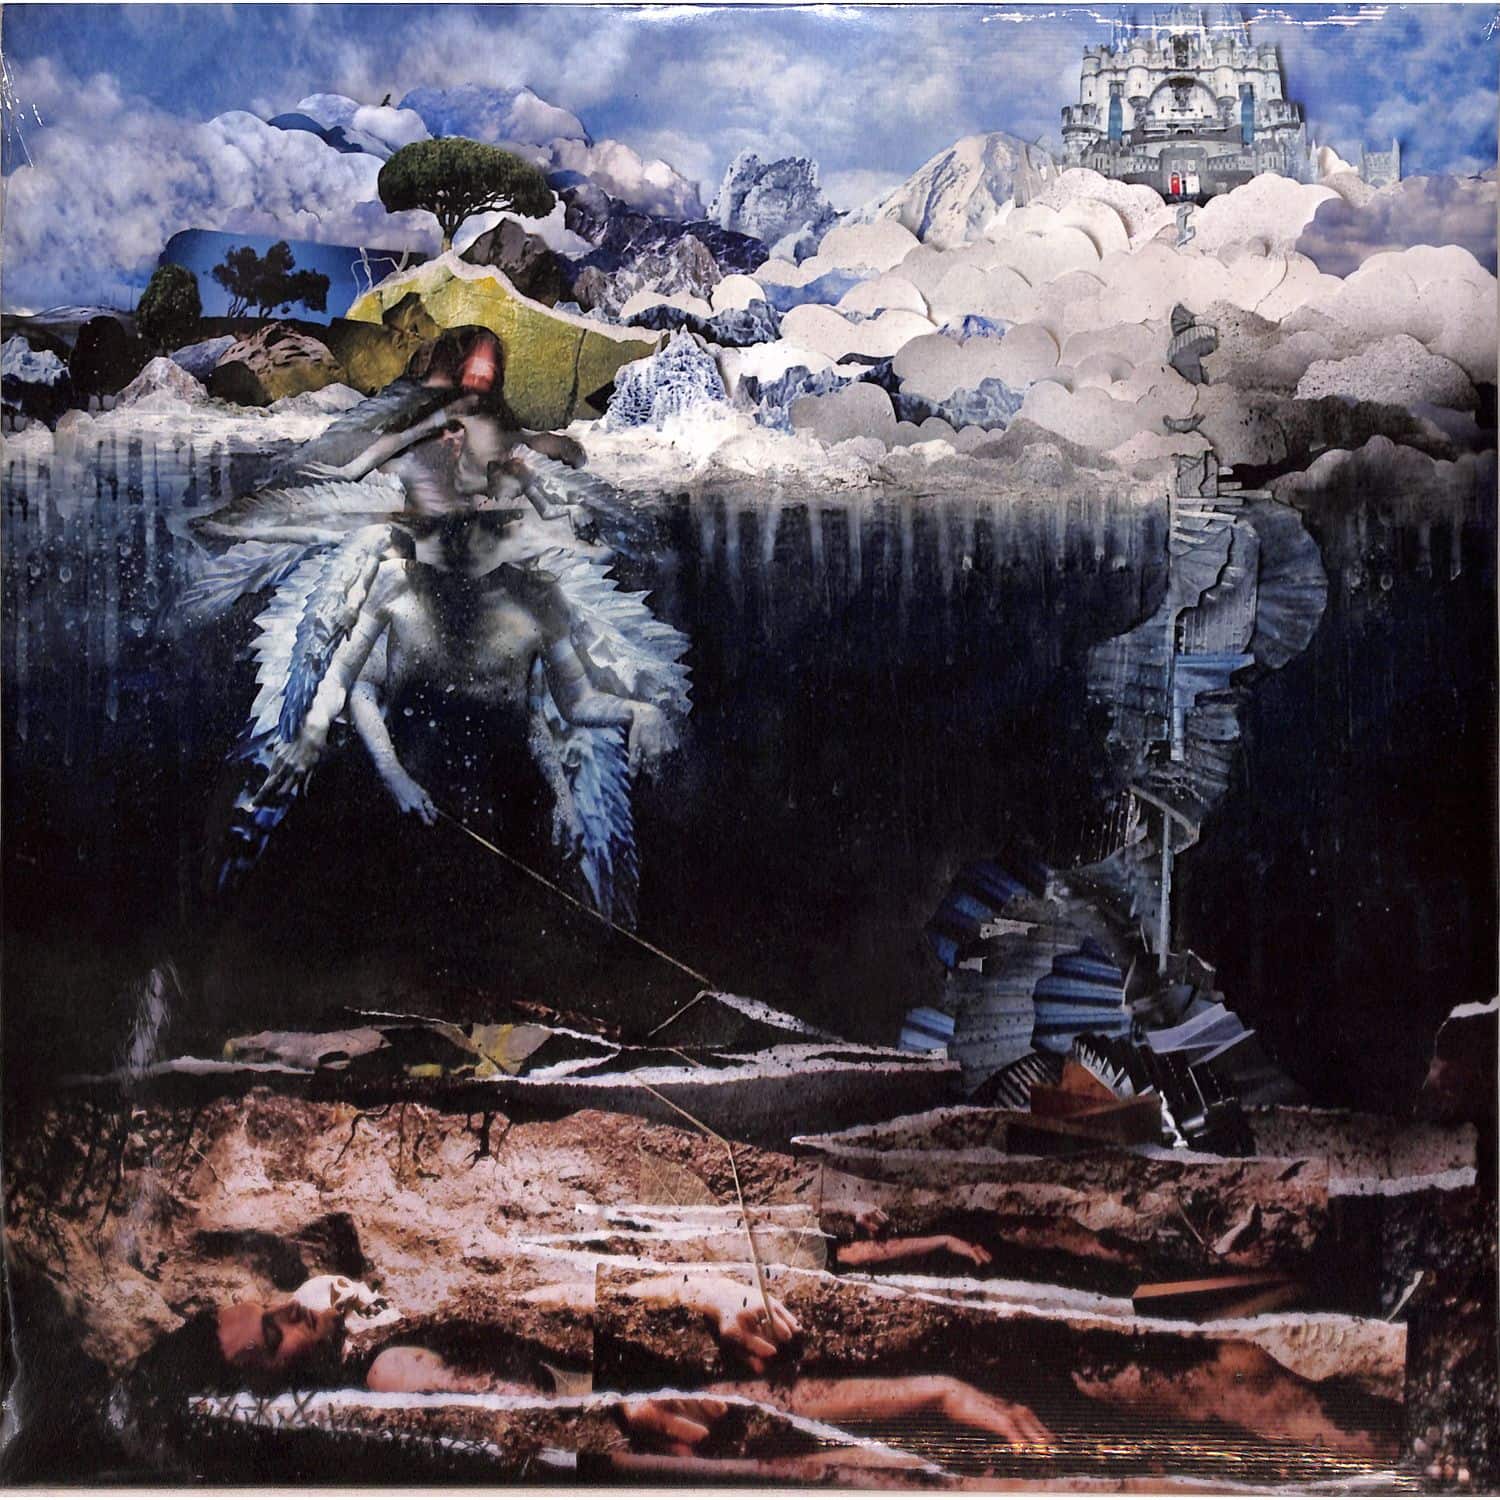 John Frusciante - THE EMPYREAN 